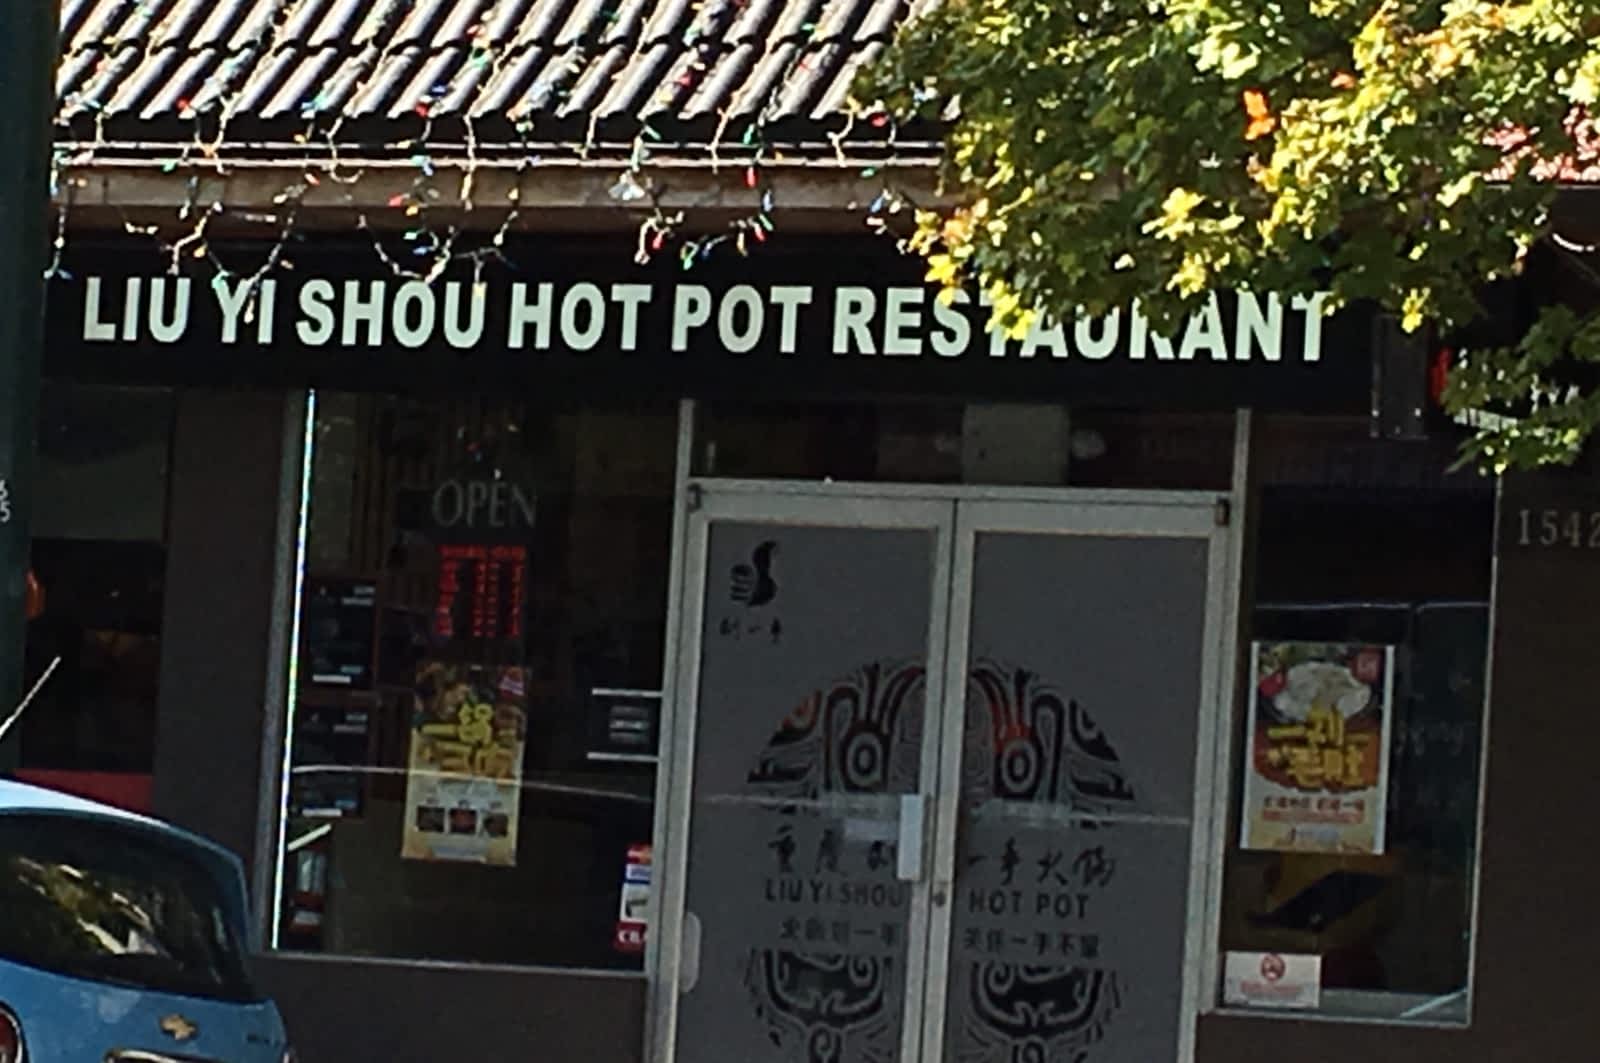 liu yi shou hot pot